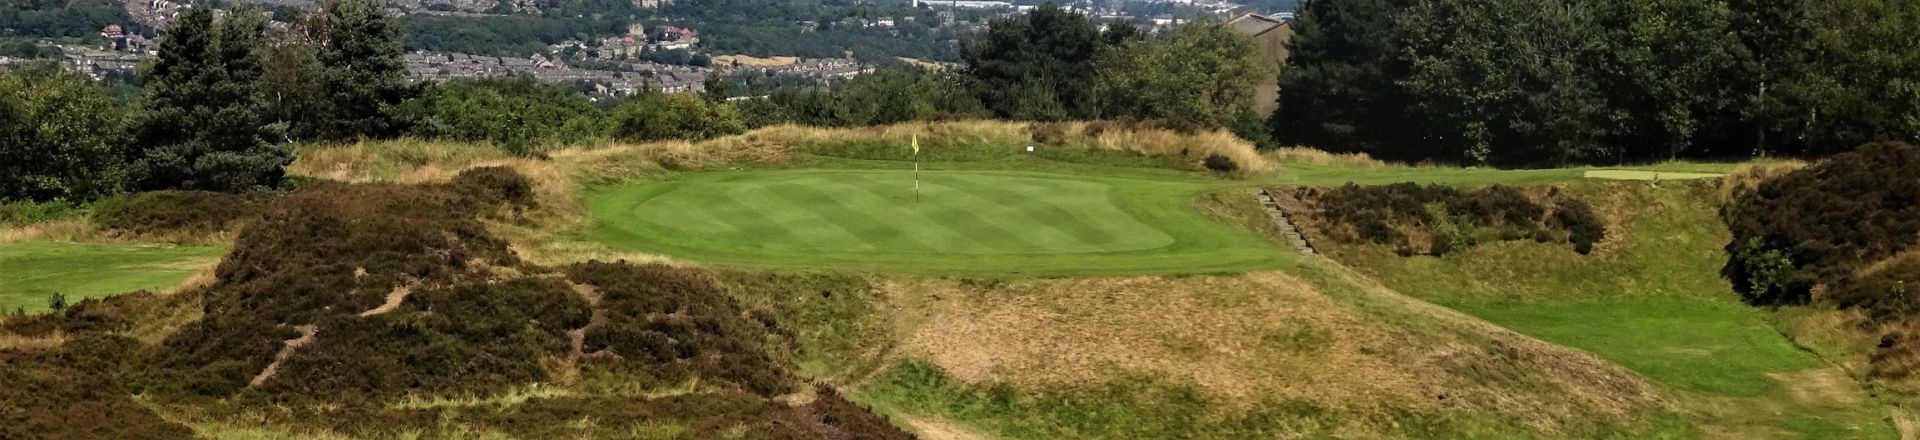 Crosland Heath Golf Course